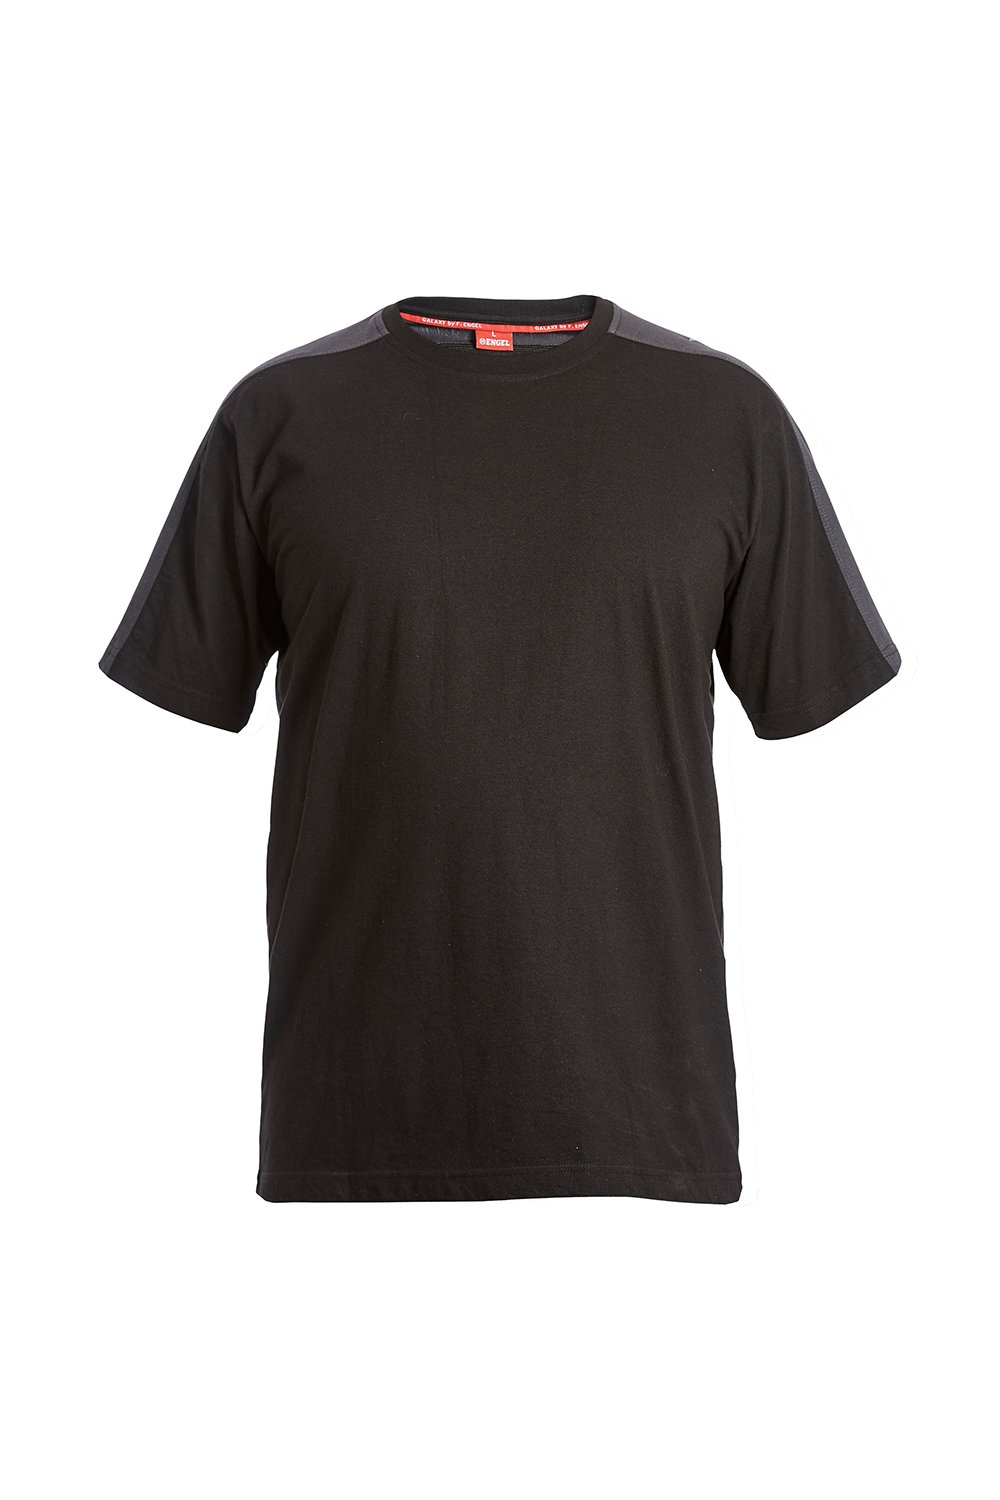 T-Shirt, weiss/anthrazit